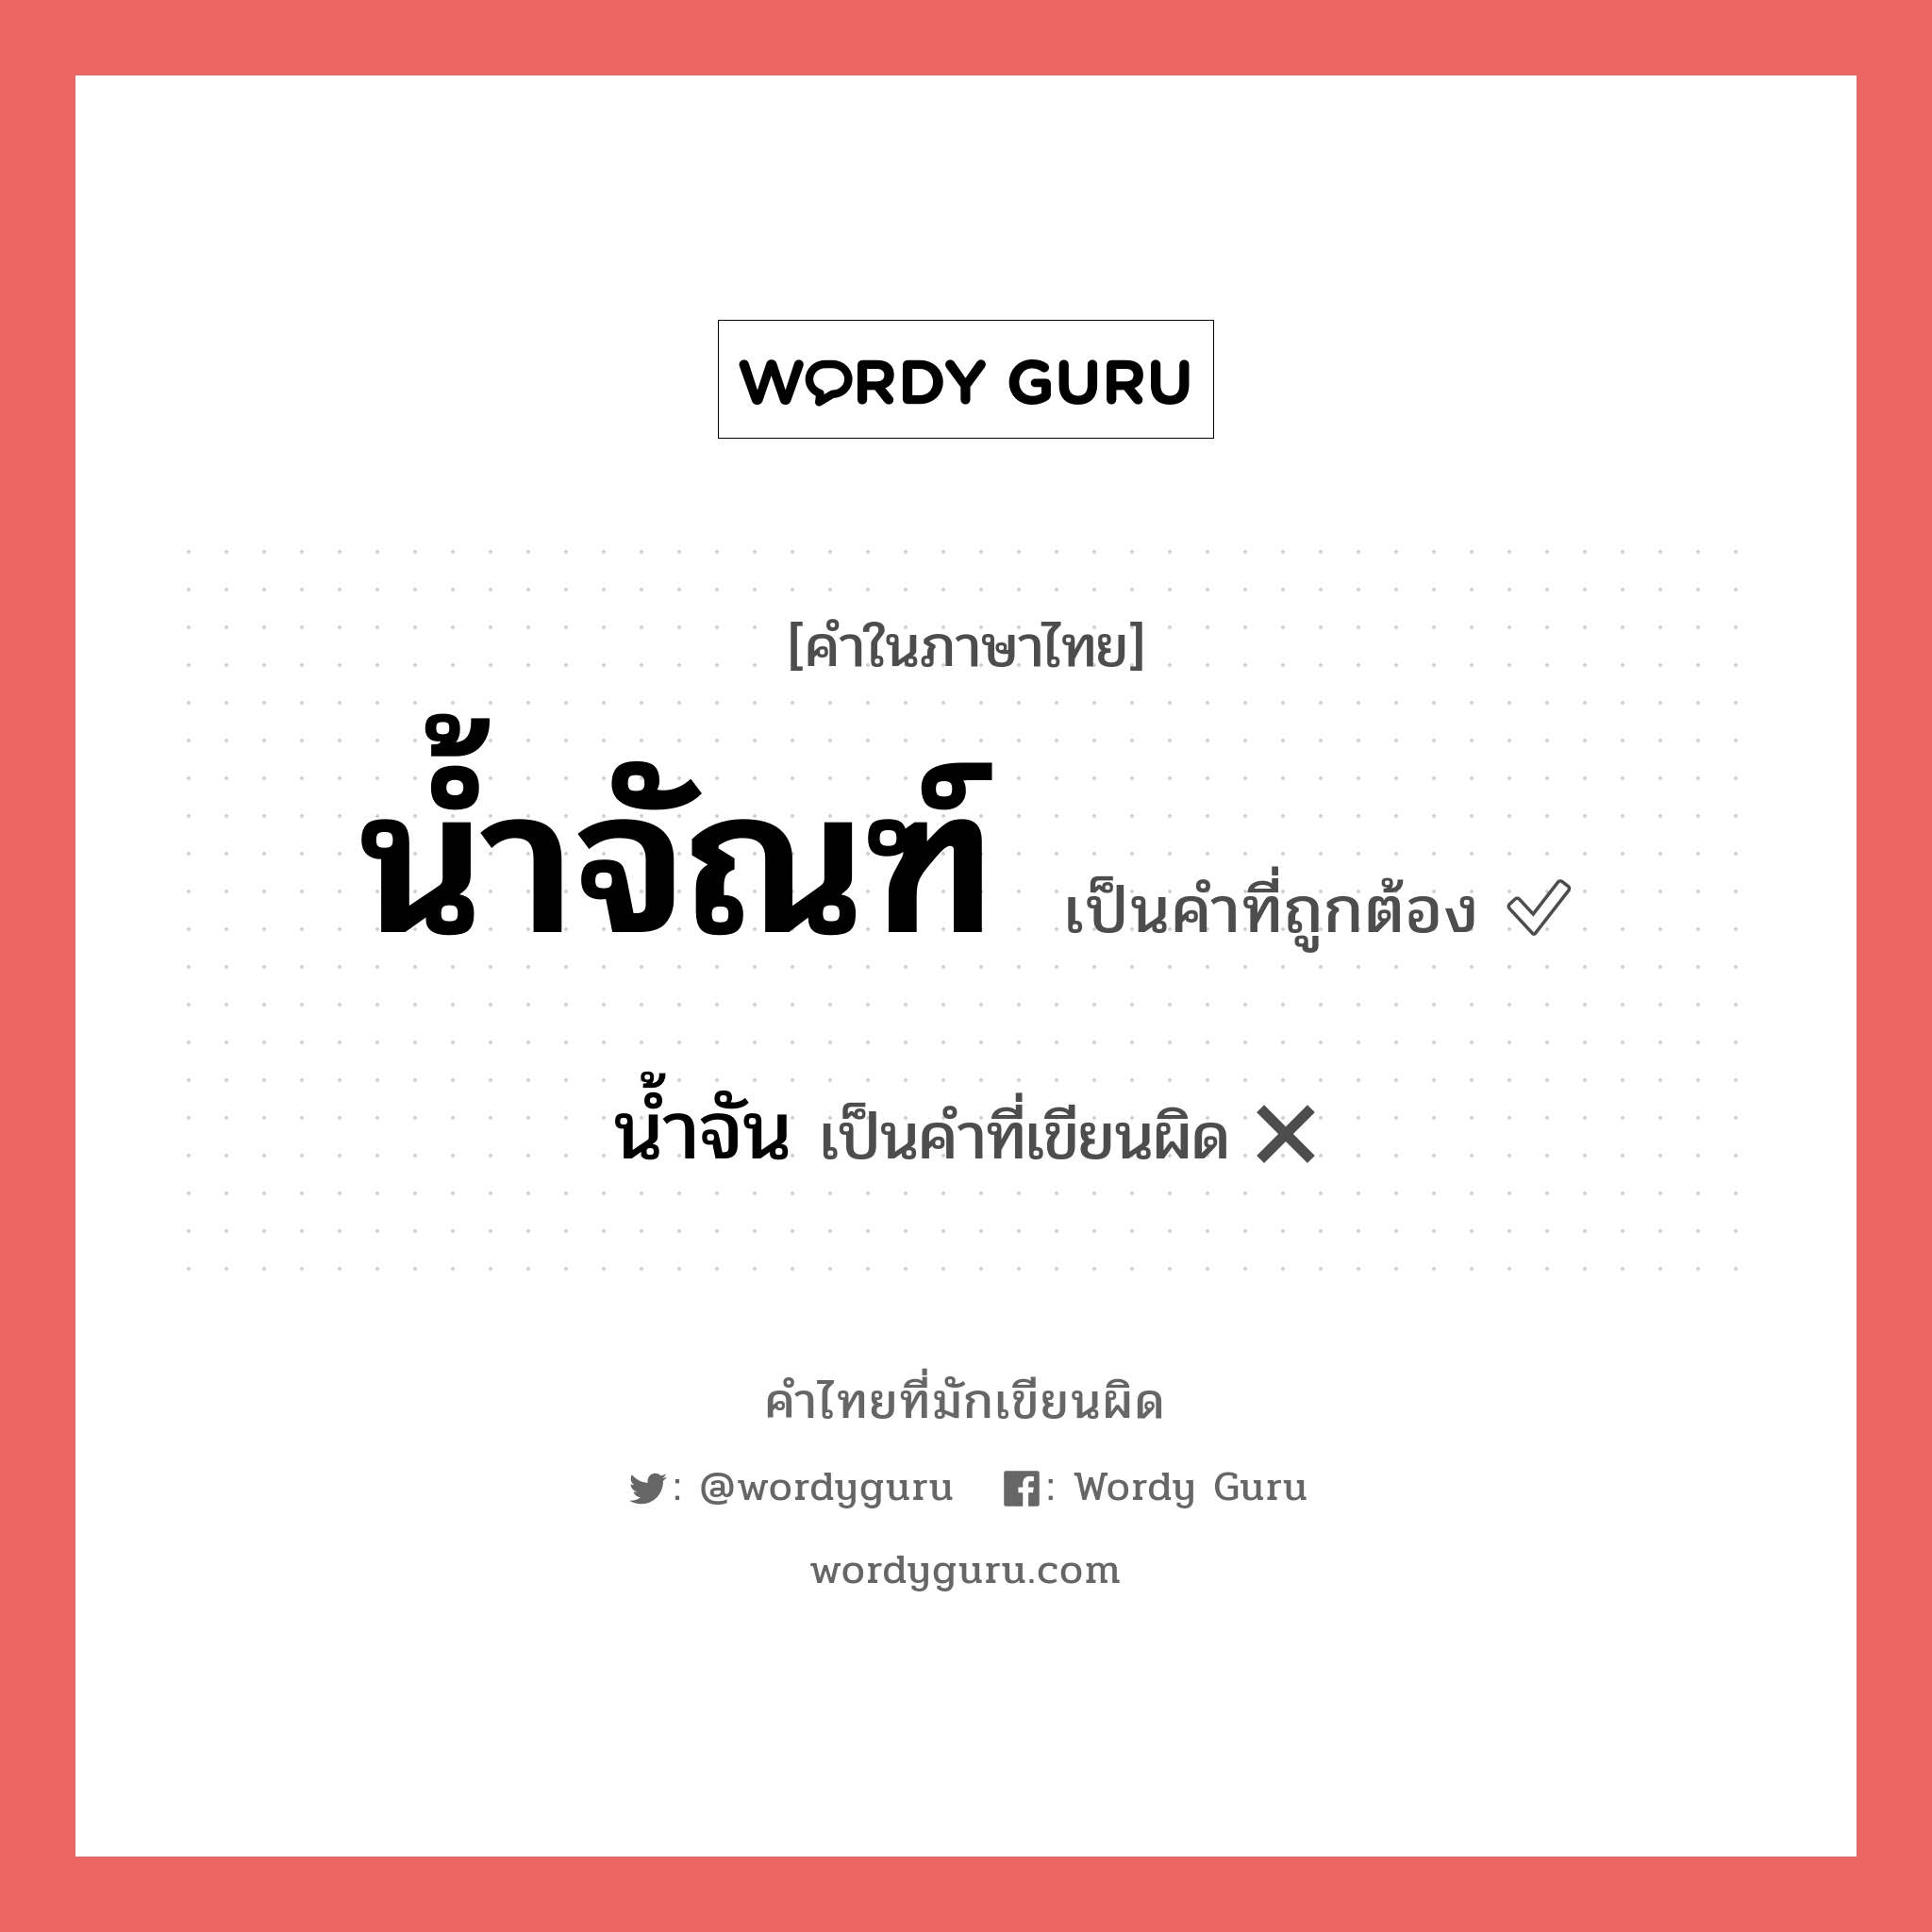 น้ำจัณฑ์ หรือ น้ำจัน คำไหนเขียนถูก?, คำในภาษาไทยที่มักเขียนผิด น้ำจัณฑ์ คำที่ผิด ❌ น้ำจัน